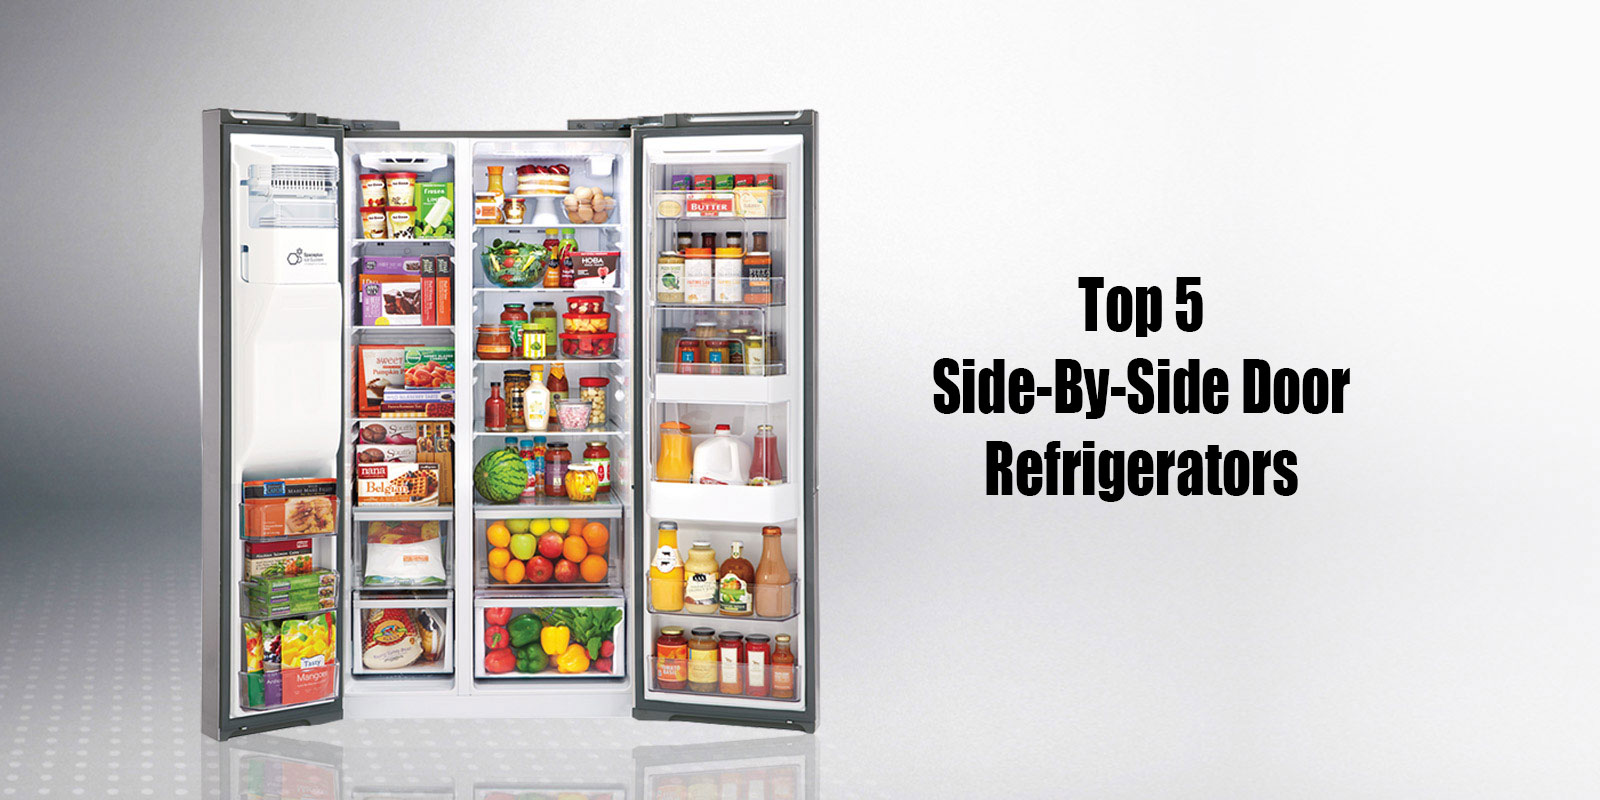 Top 5 Side-by-Side door refrigerators